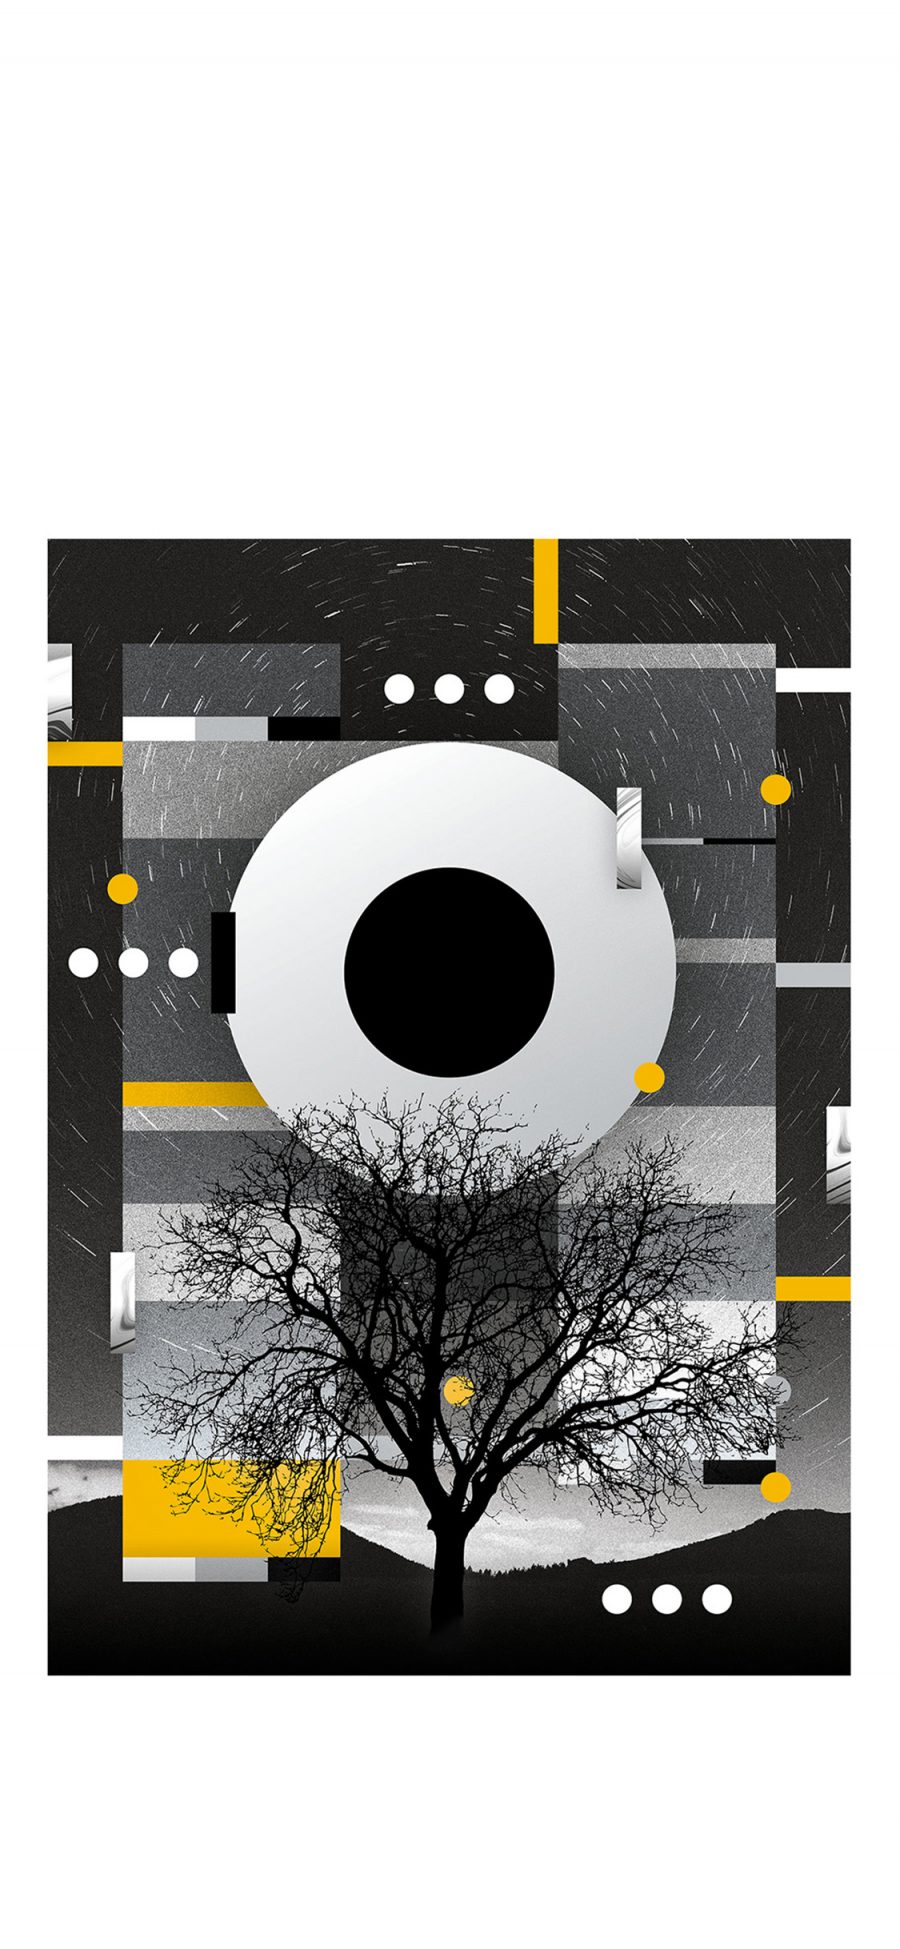 [2436×1125]封面 树木 圆形 黑白 设计 结构 苹果手机动漫壁纸图片